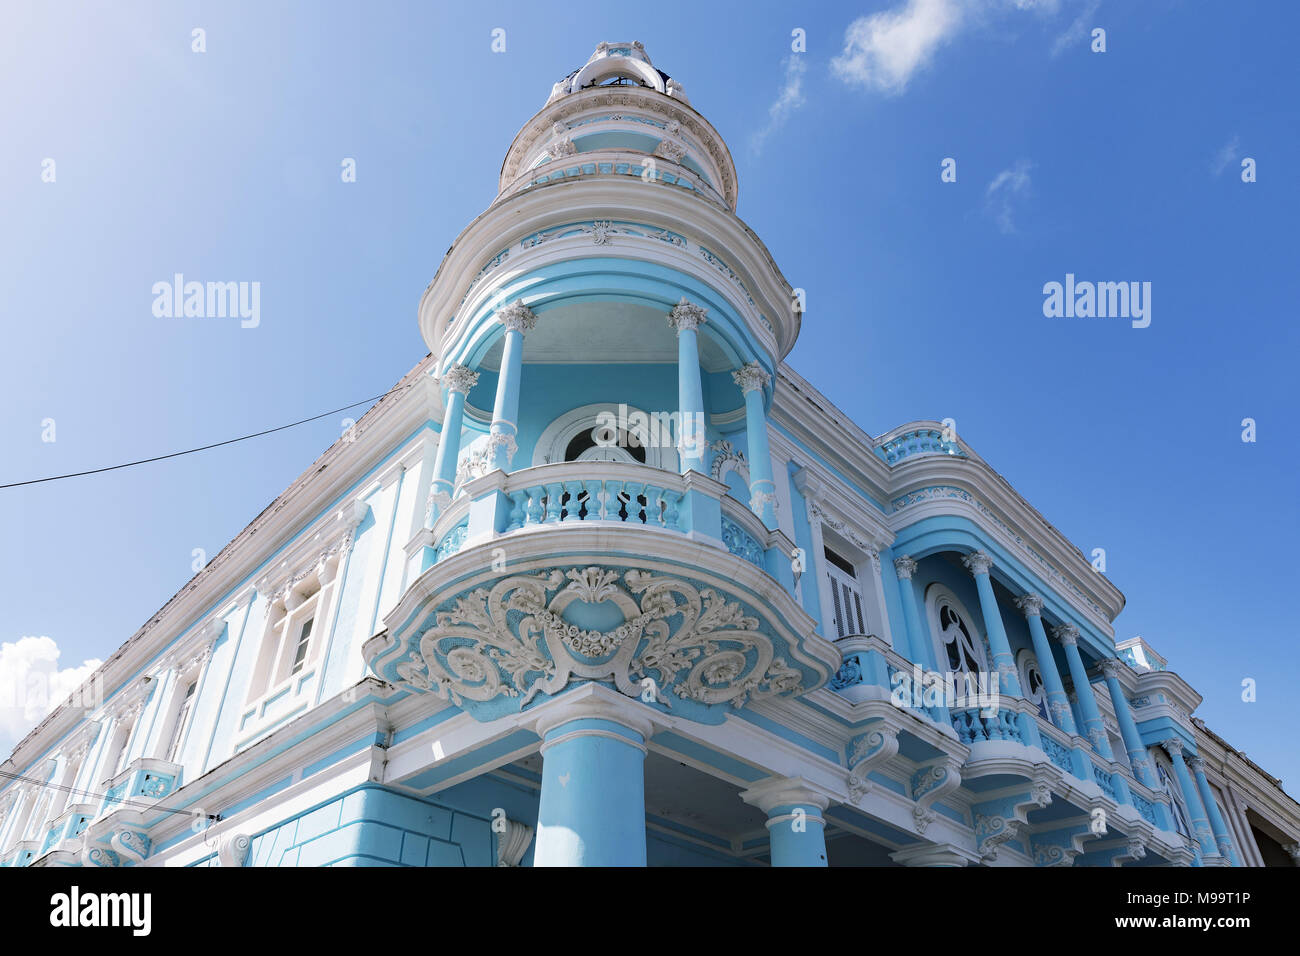 Centre historique urbain de Cienfuegos - Site du patrimoine mondial de l'UNESCO à Cuba. Le Ferrer palace qui est un célèbre bâtiment néoclassique dans le Parque Jose Banque D'Images